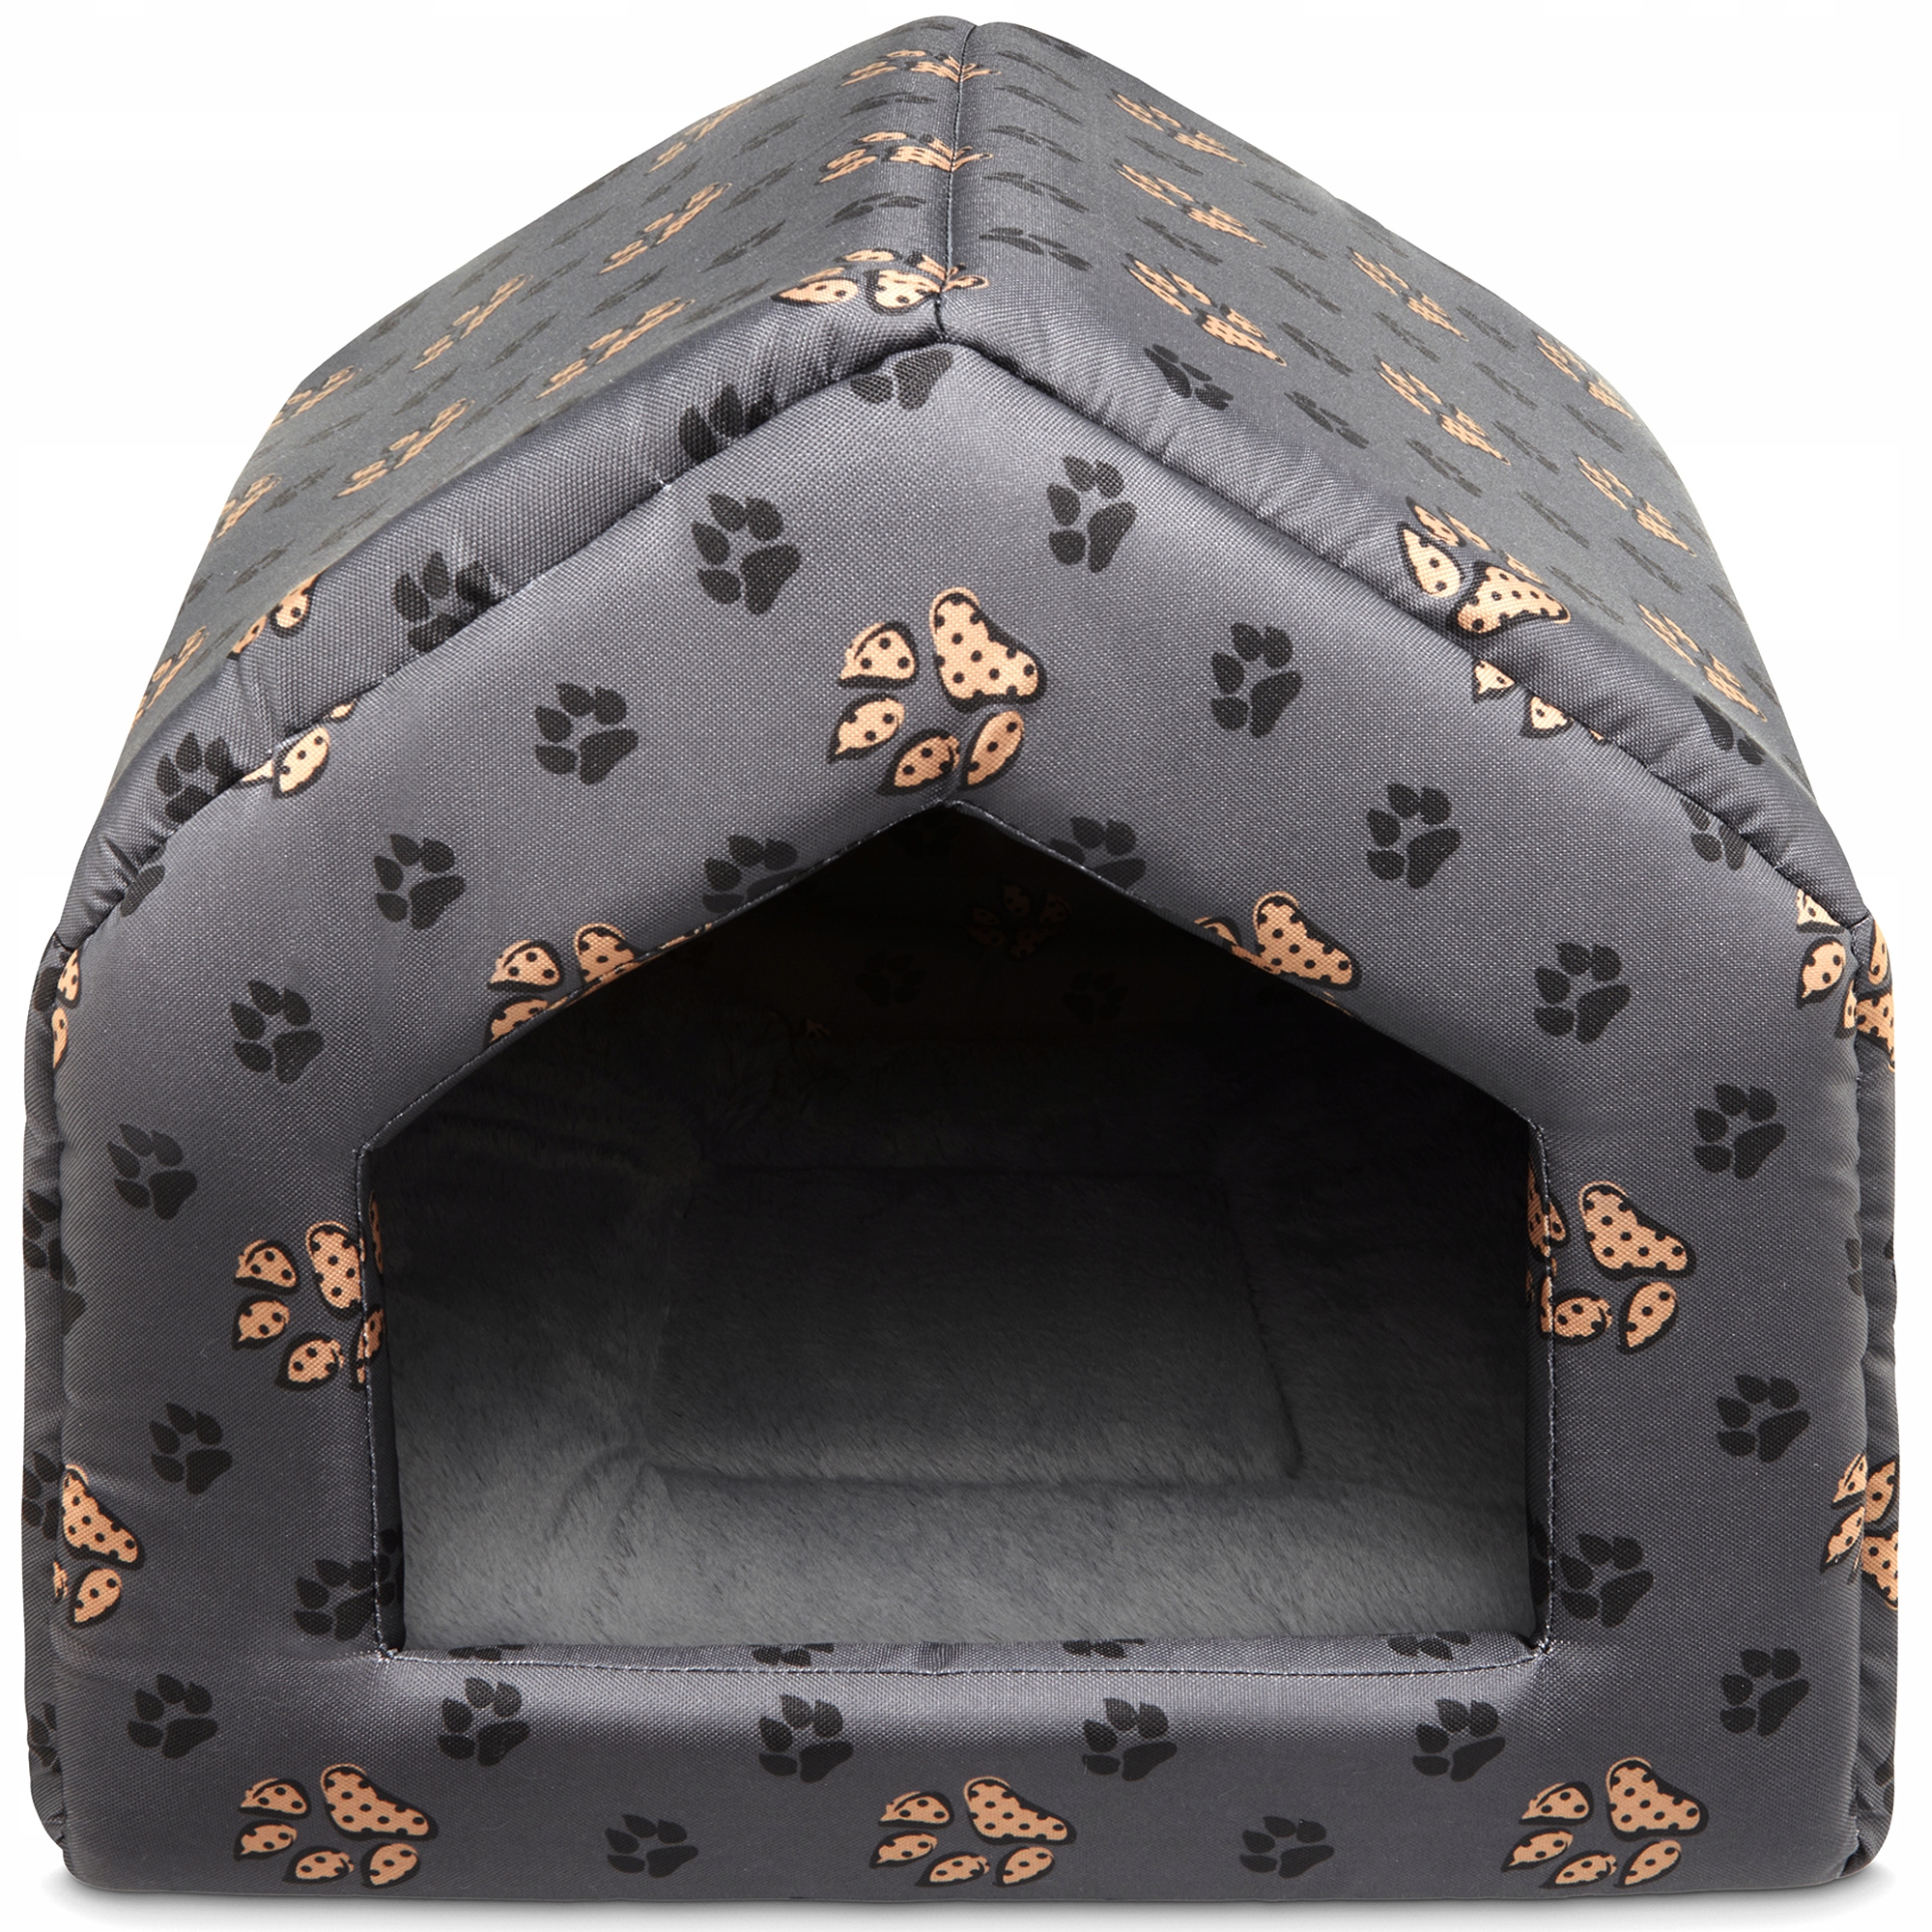 Кровать собака кошка домик XL лапки + мех цвет черный оттенки серого серебро